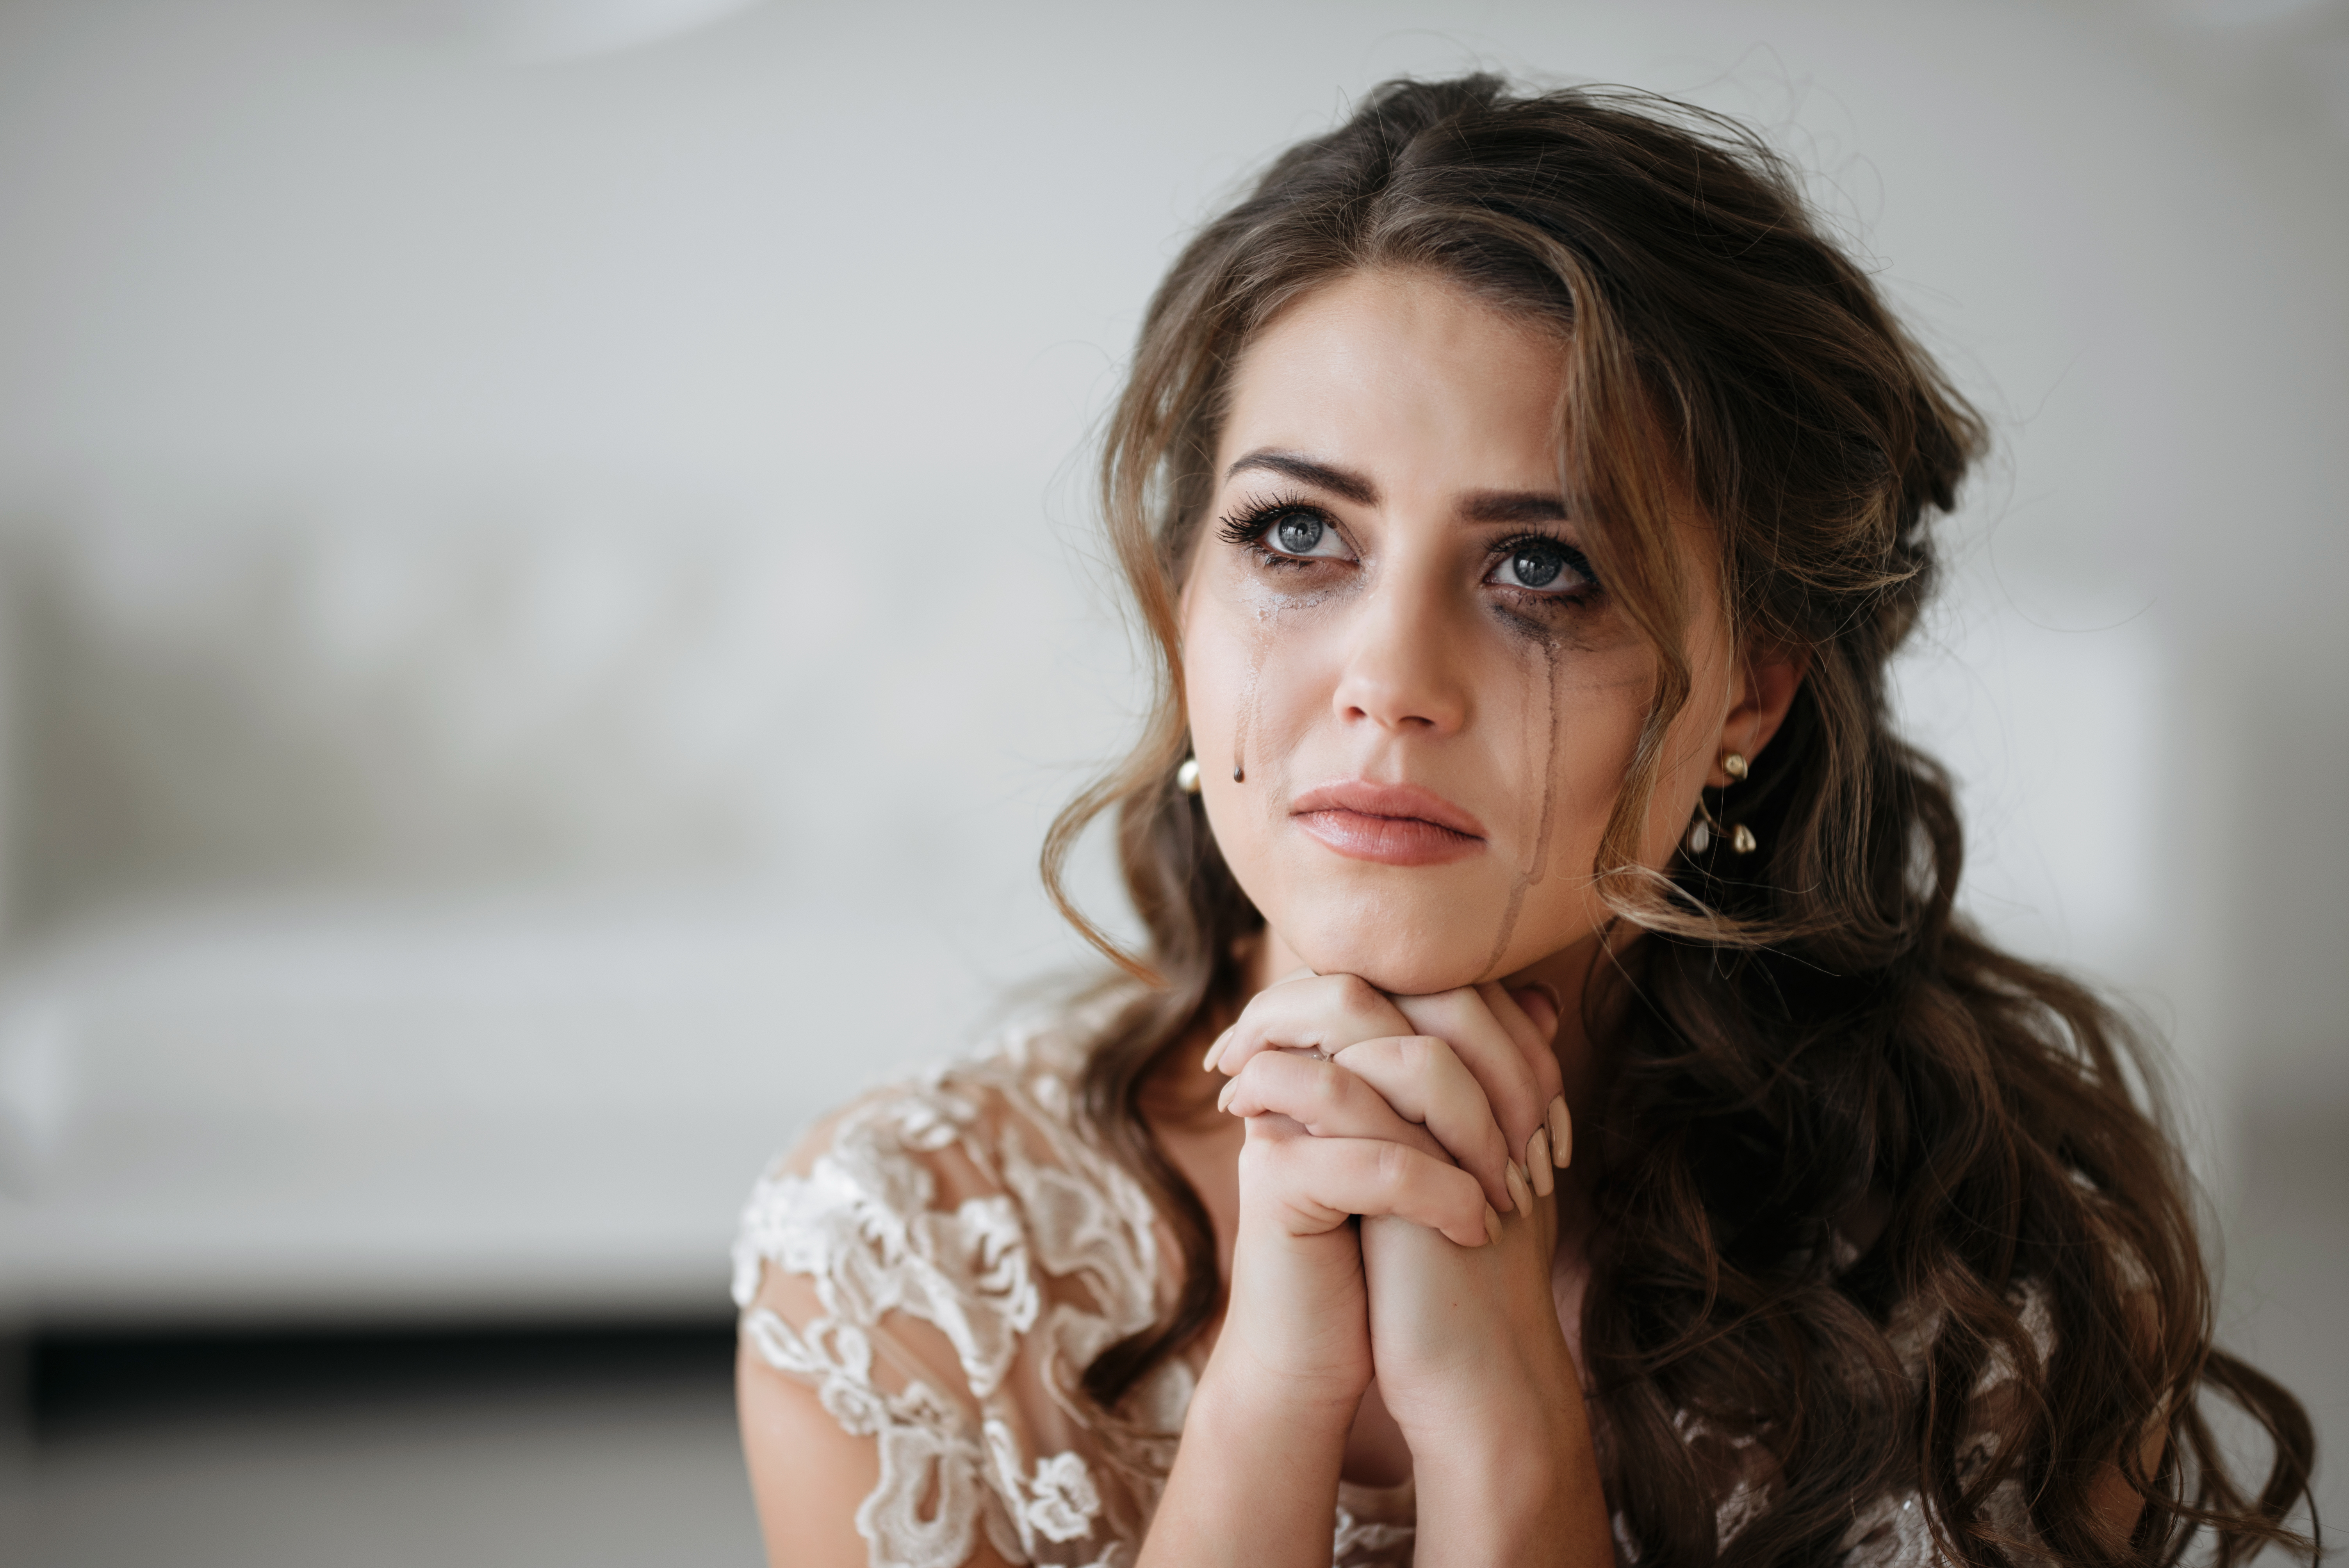 Le maquillage d'une mariée est ruiné après sa crise émotionnelle | Source : Shutterstock